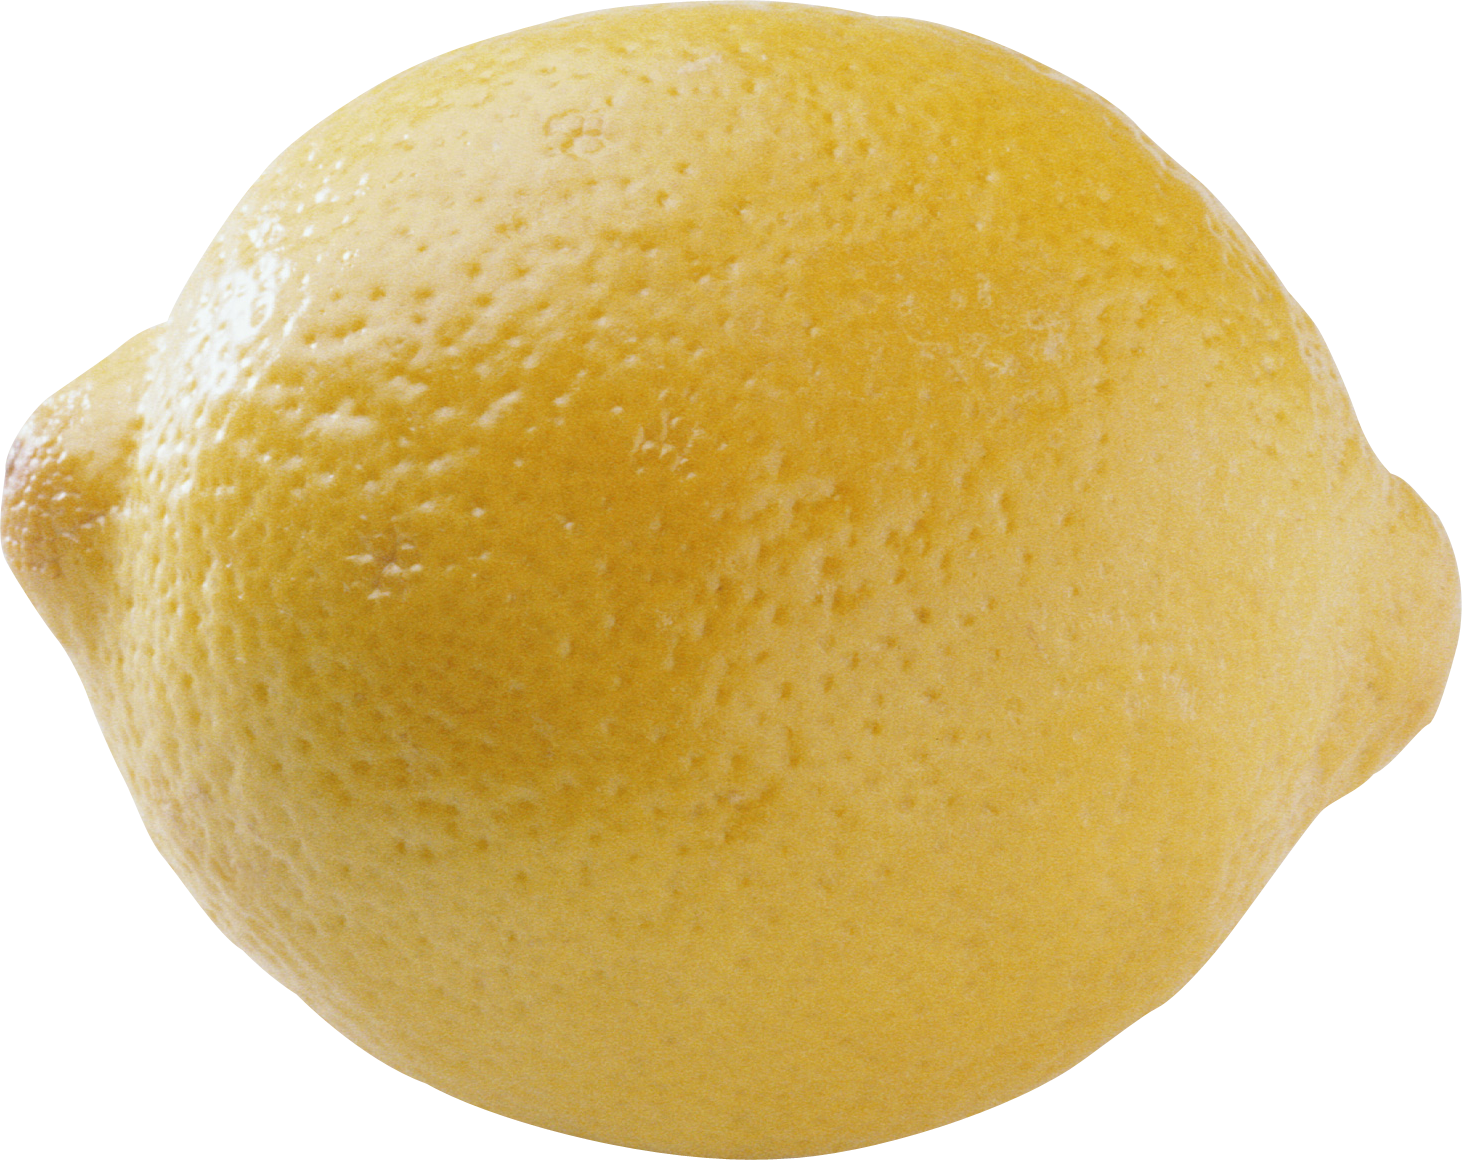 Lemon PNG